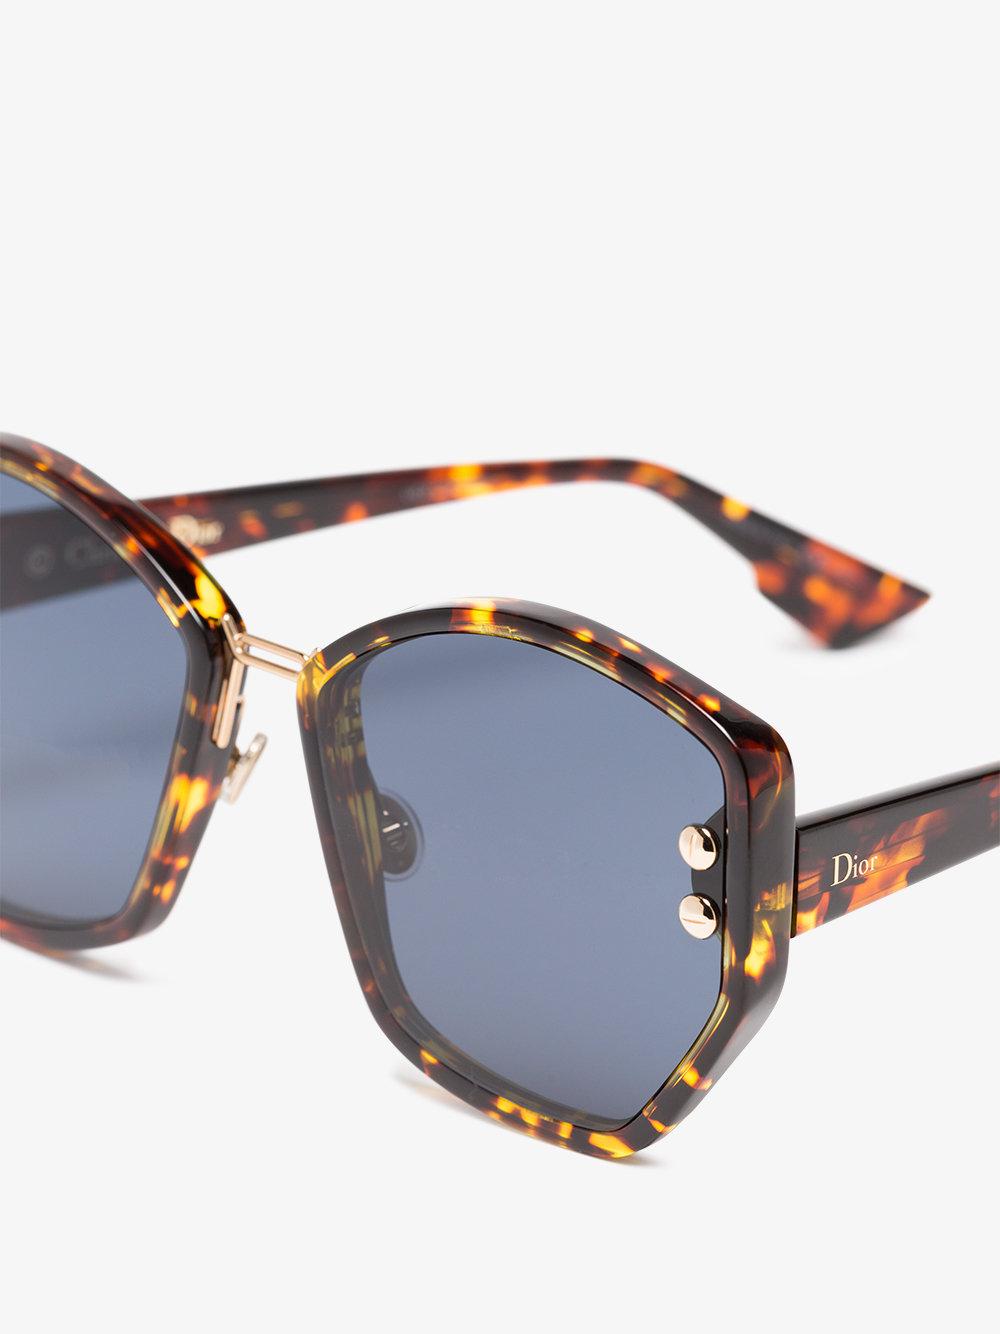 dior addict 2 sunglasses